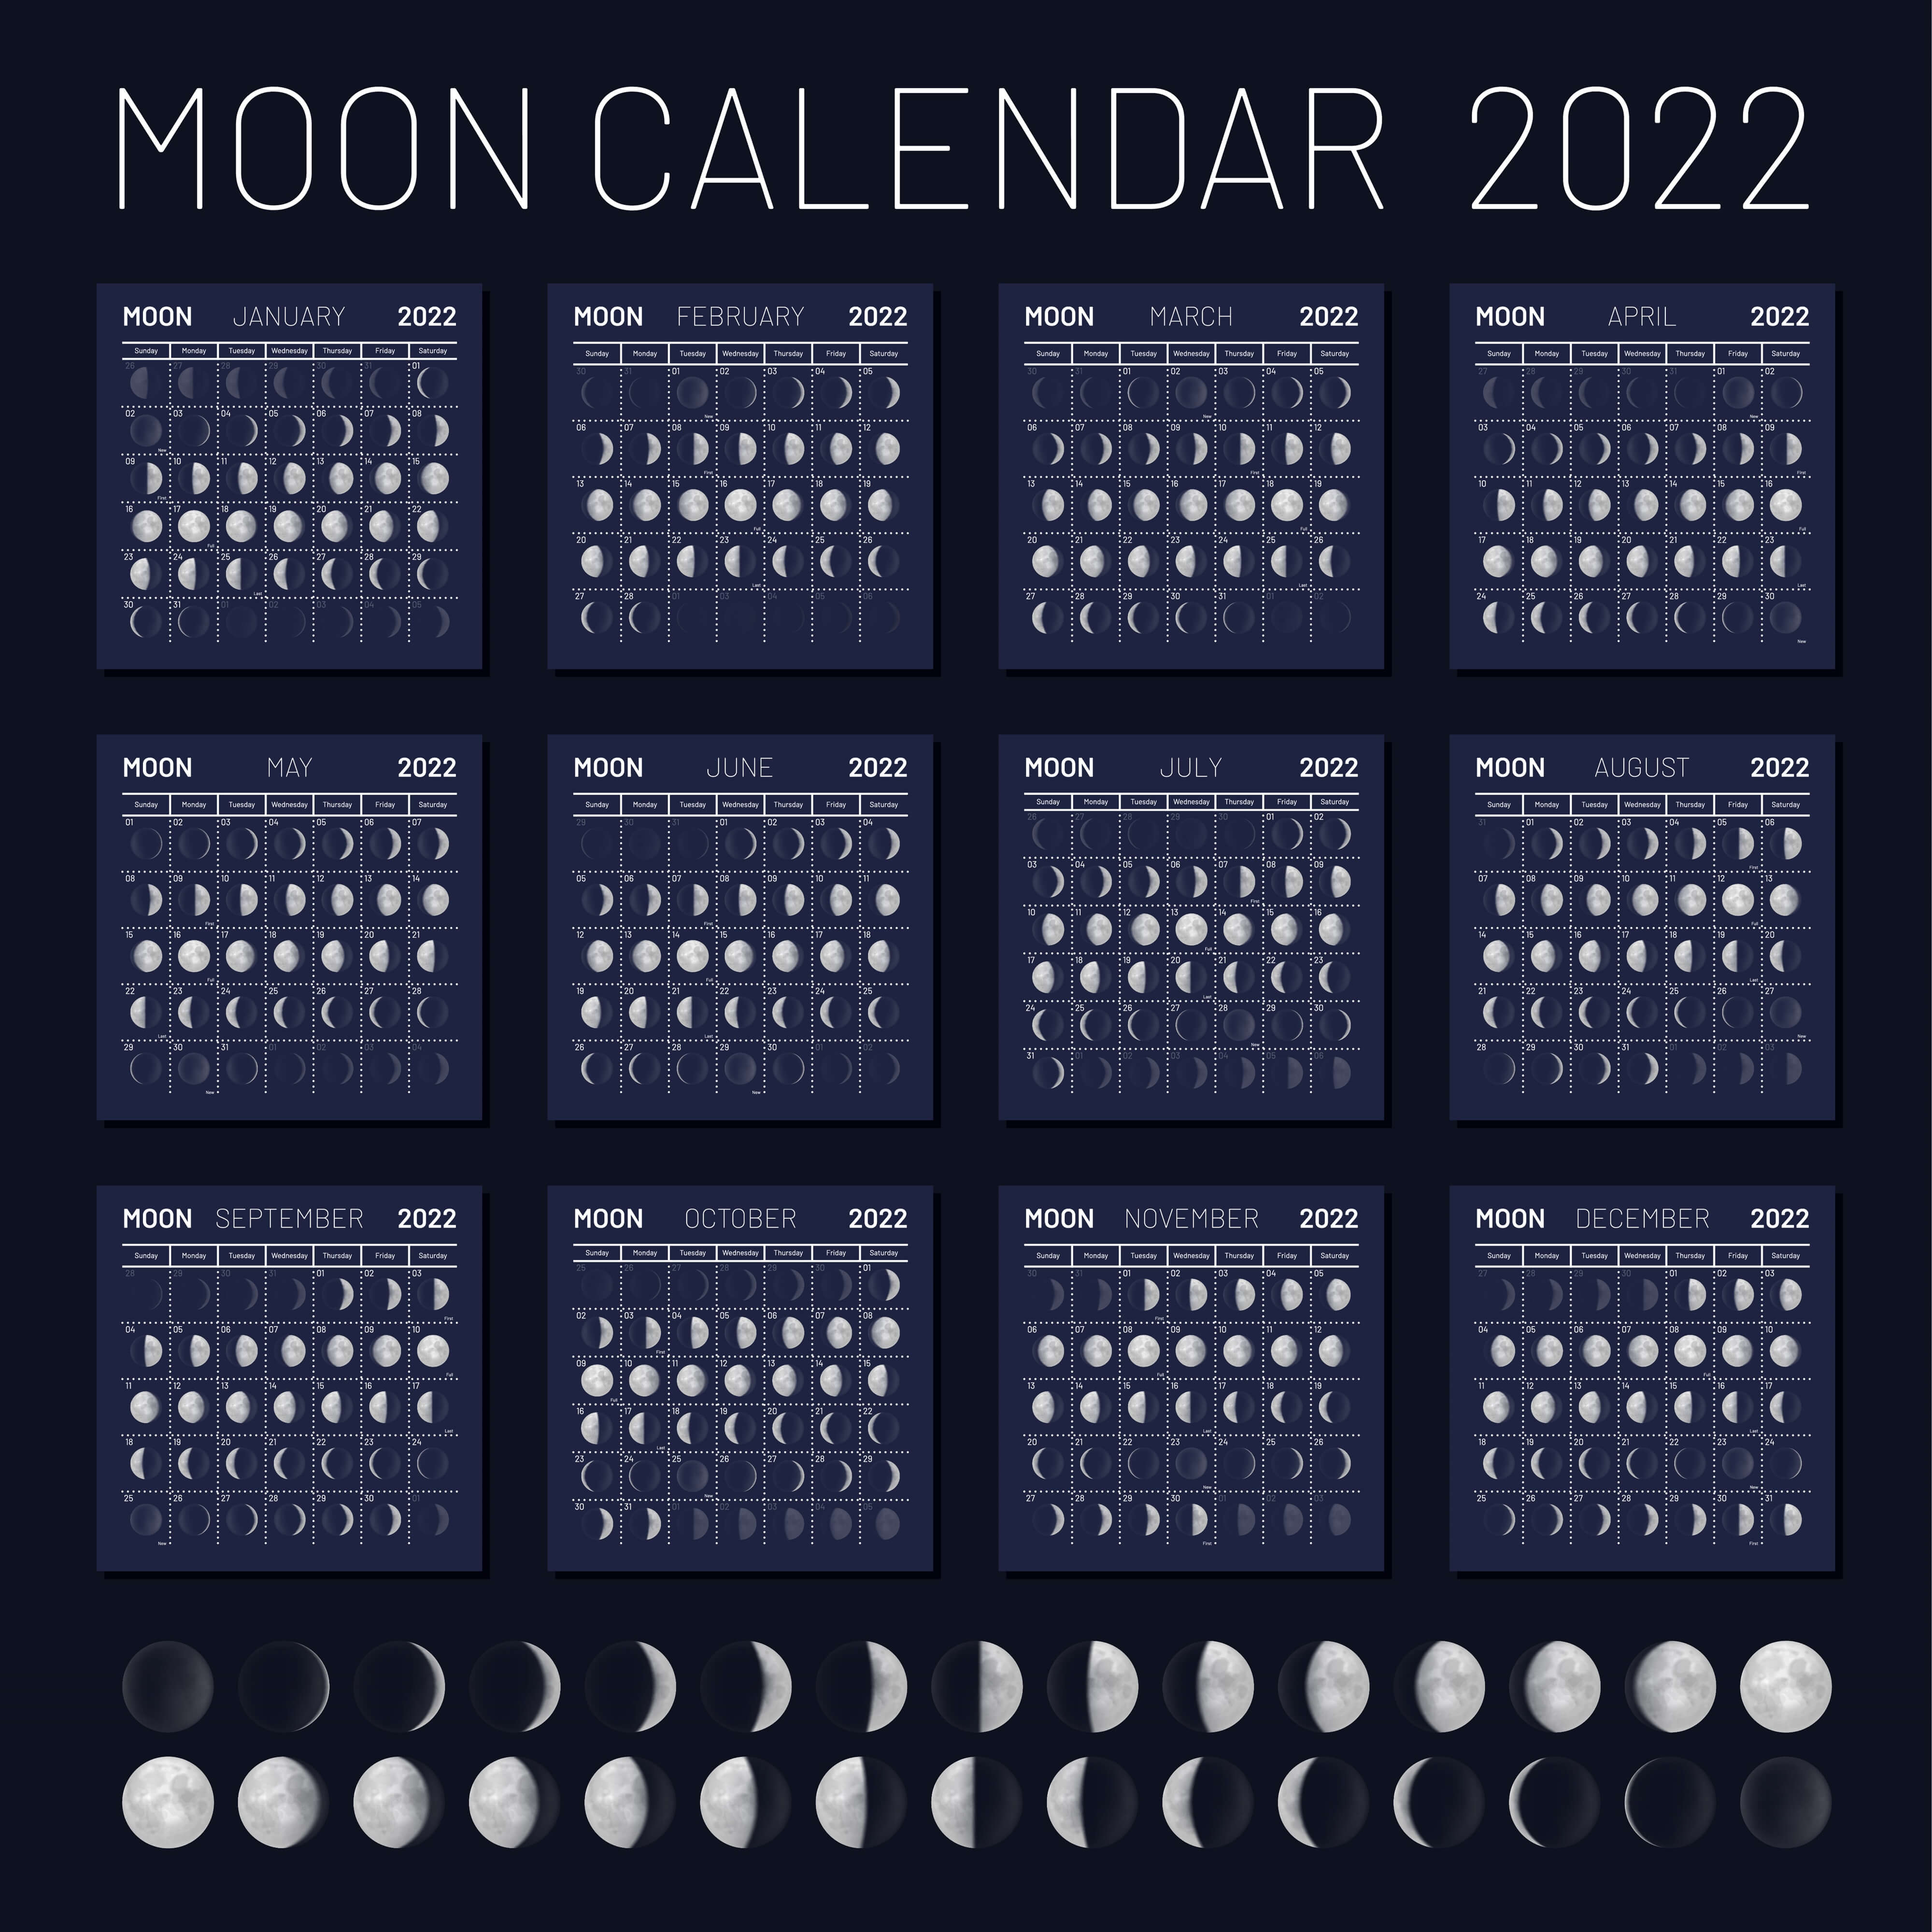 Календарь фаз луны на апрель 2024 года